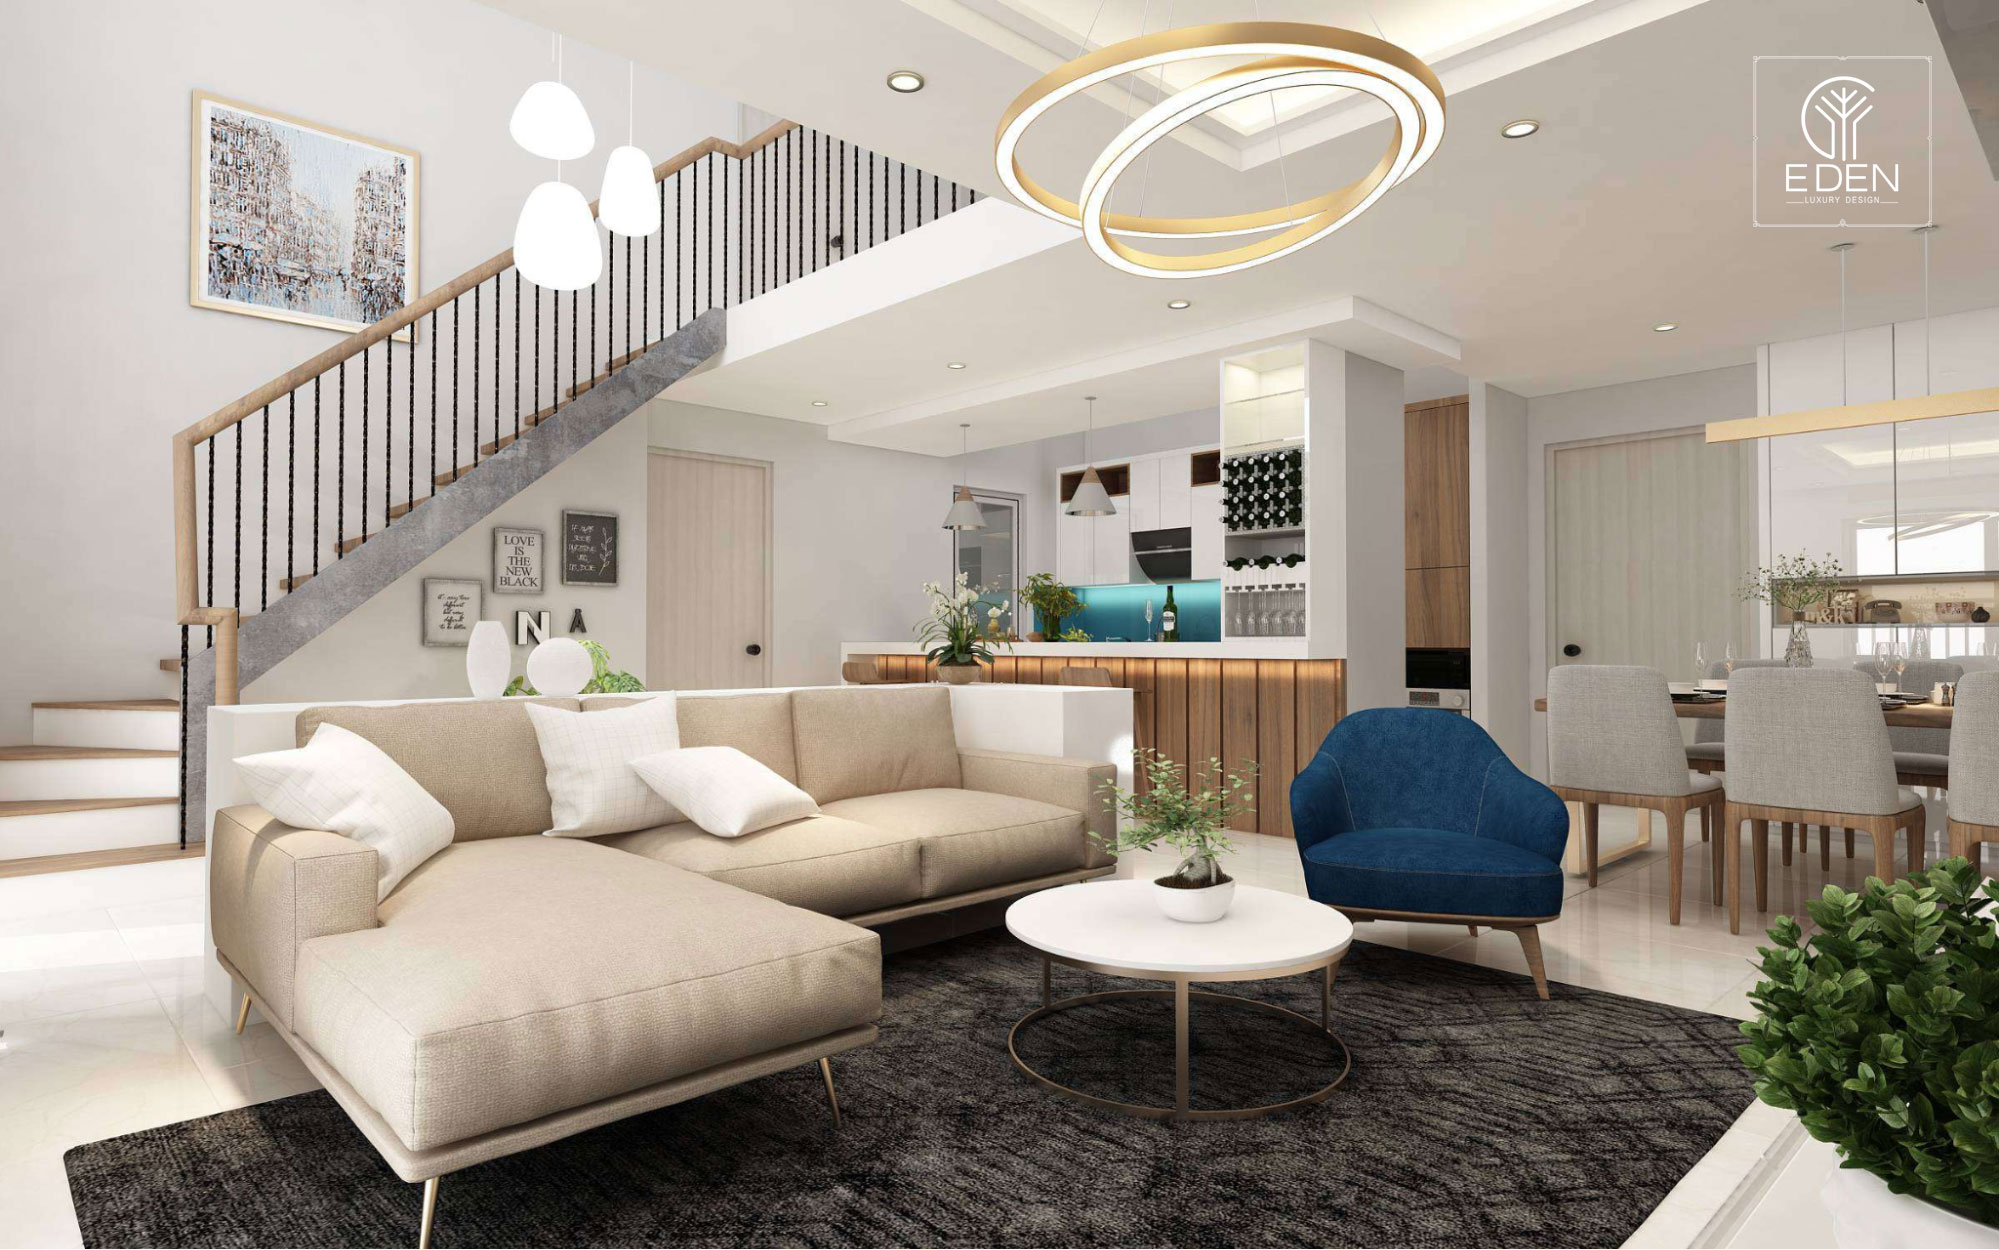 Mẫu thiết kế căn hộ Duplex hiện đại, đề cao tiện ích và công năng sử dụng.